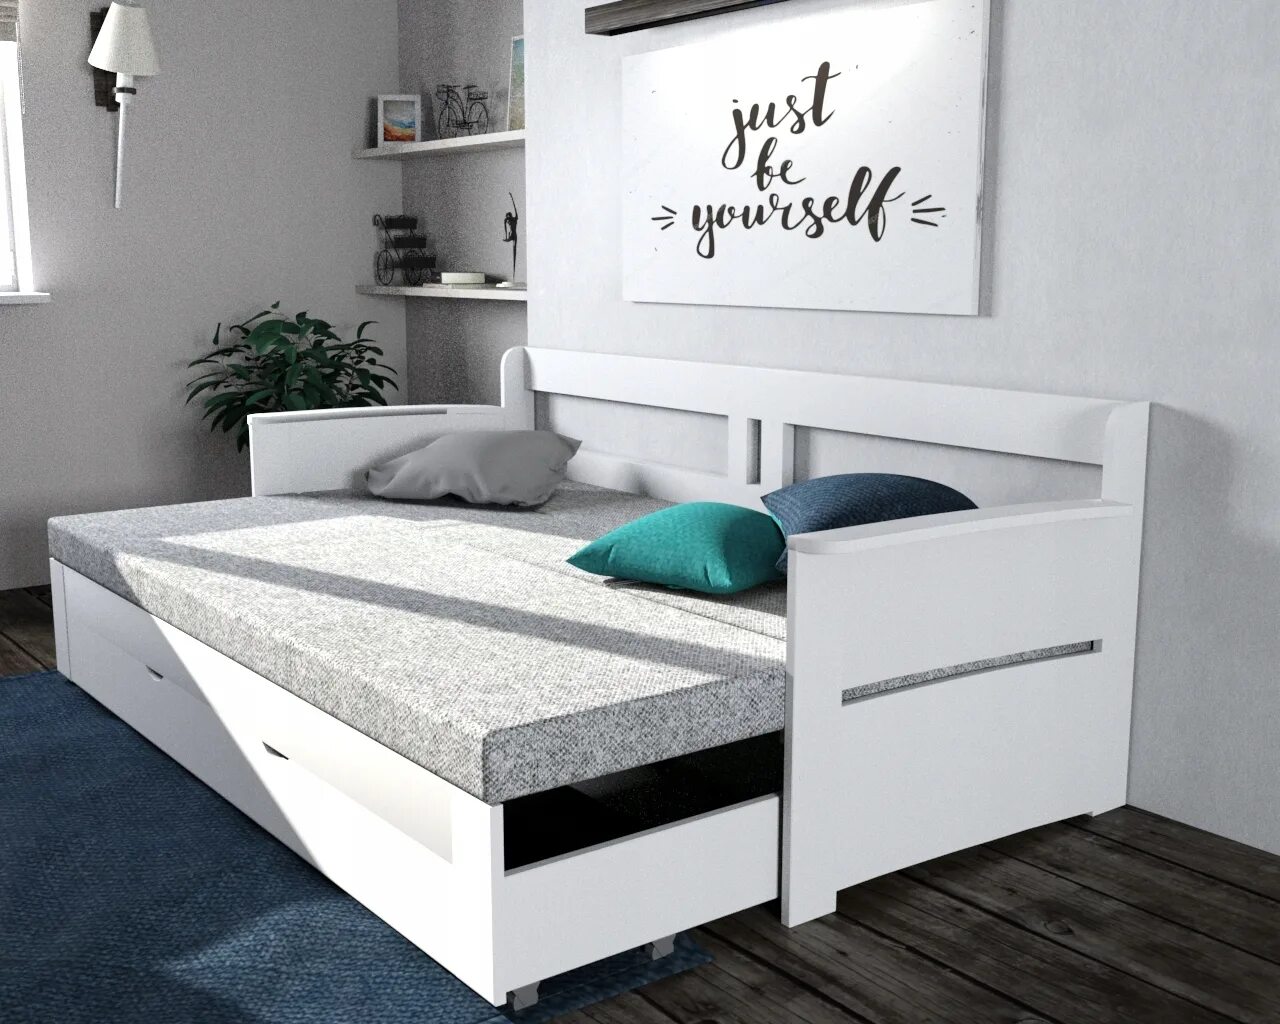 Кровати с дополнительным выдвижным местом. Двуспальная выдвижная кровать ikea. Кровать с дополнительным спальным местом выдвижная икеа. Ikea кровать с выдвижным спальным местом. Кровать икеа Флакса.